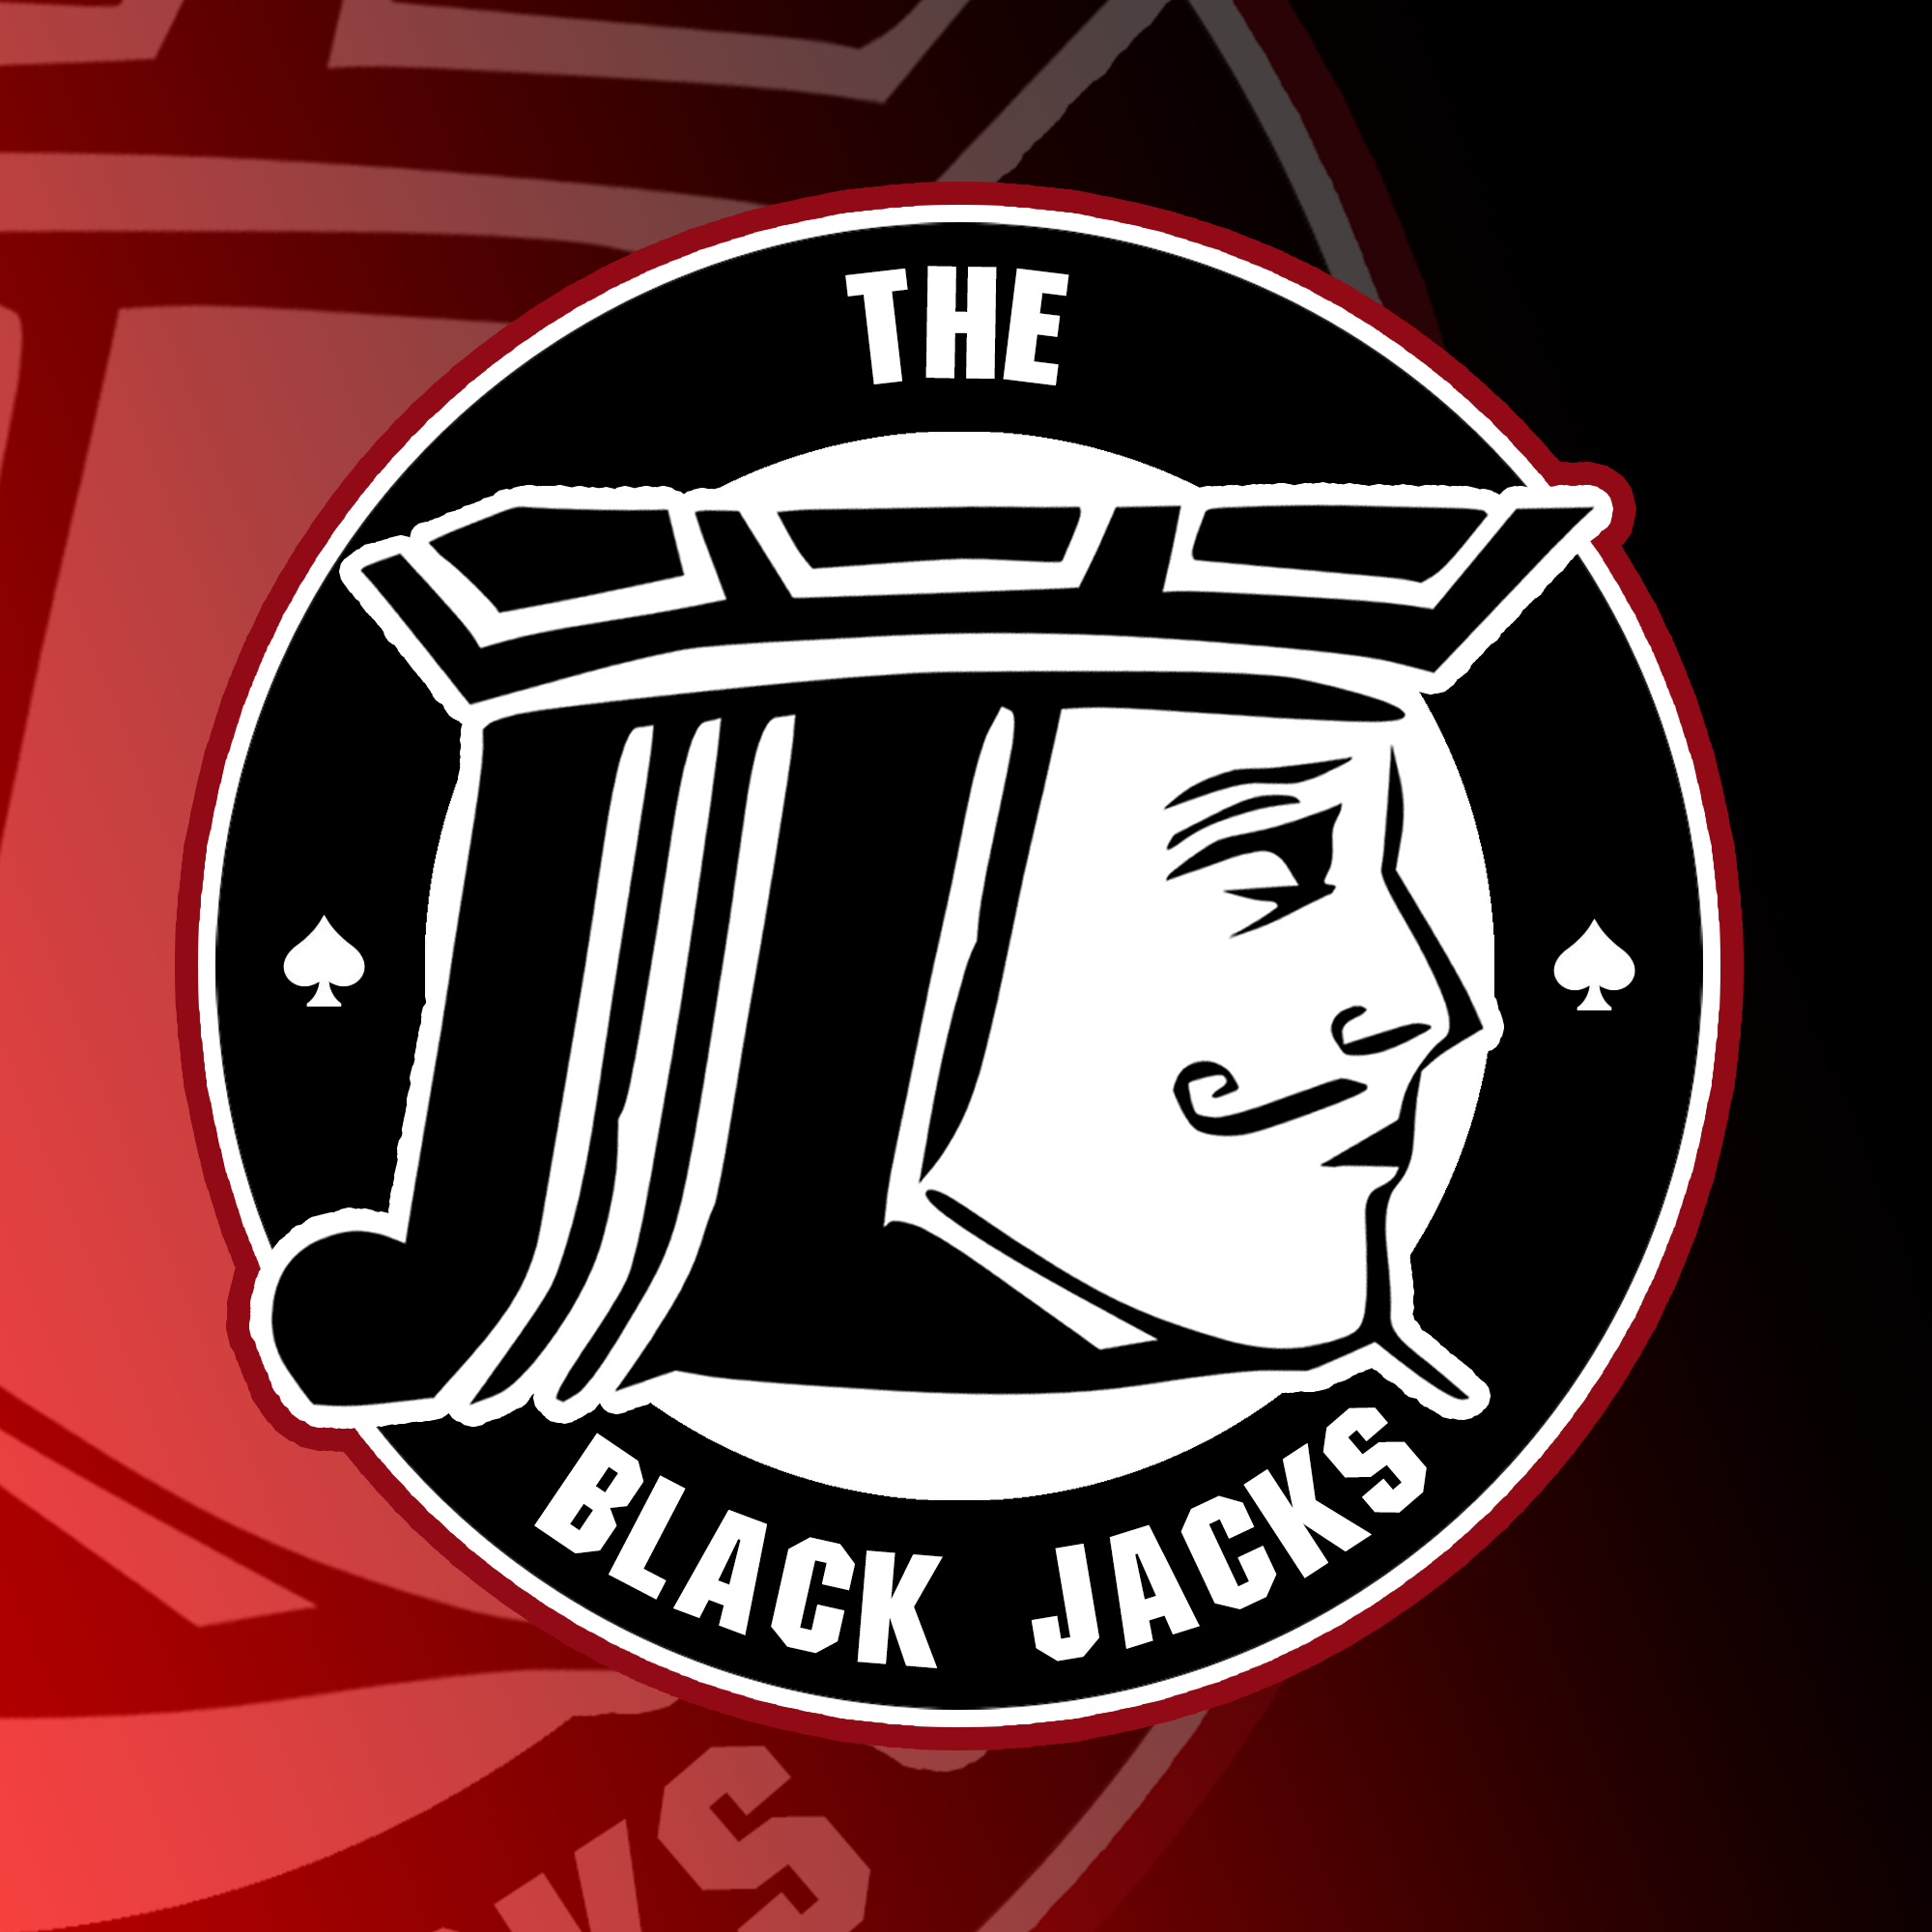 The Black Jacks